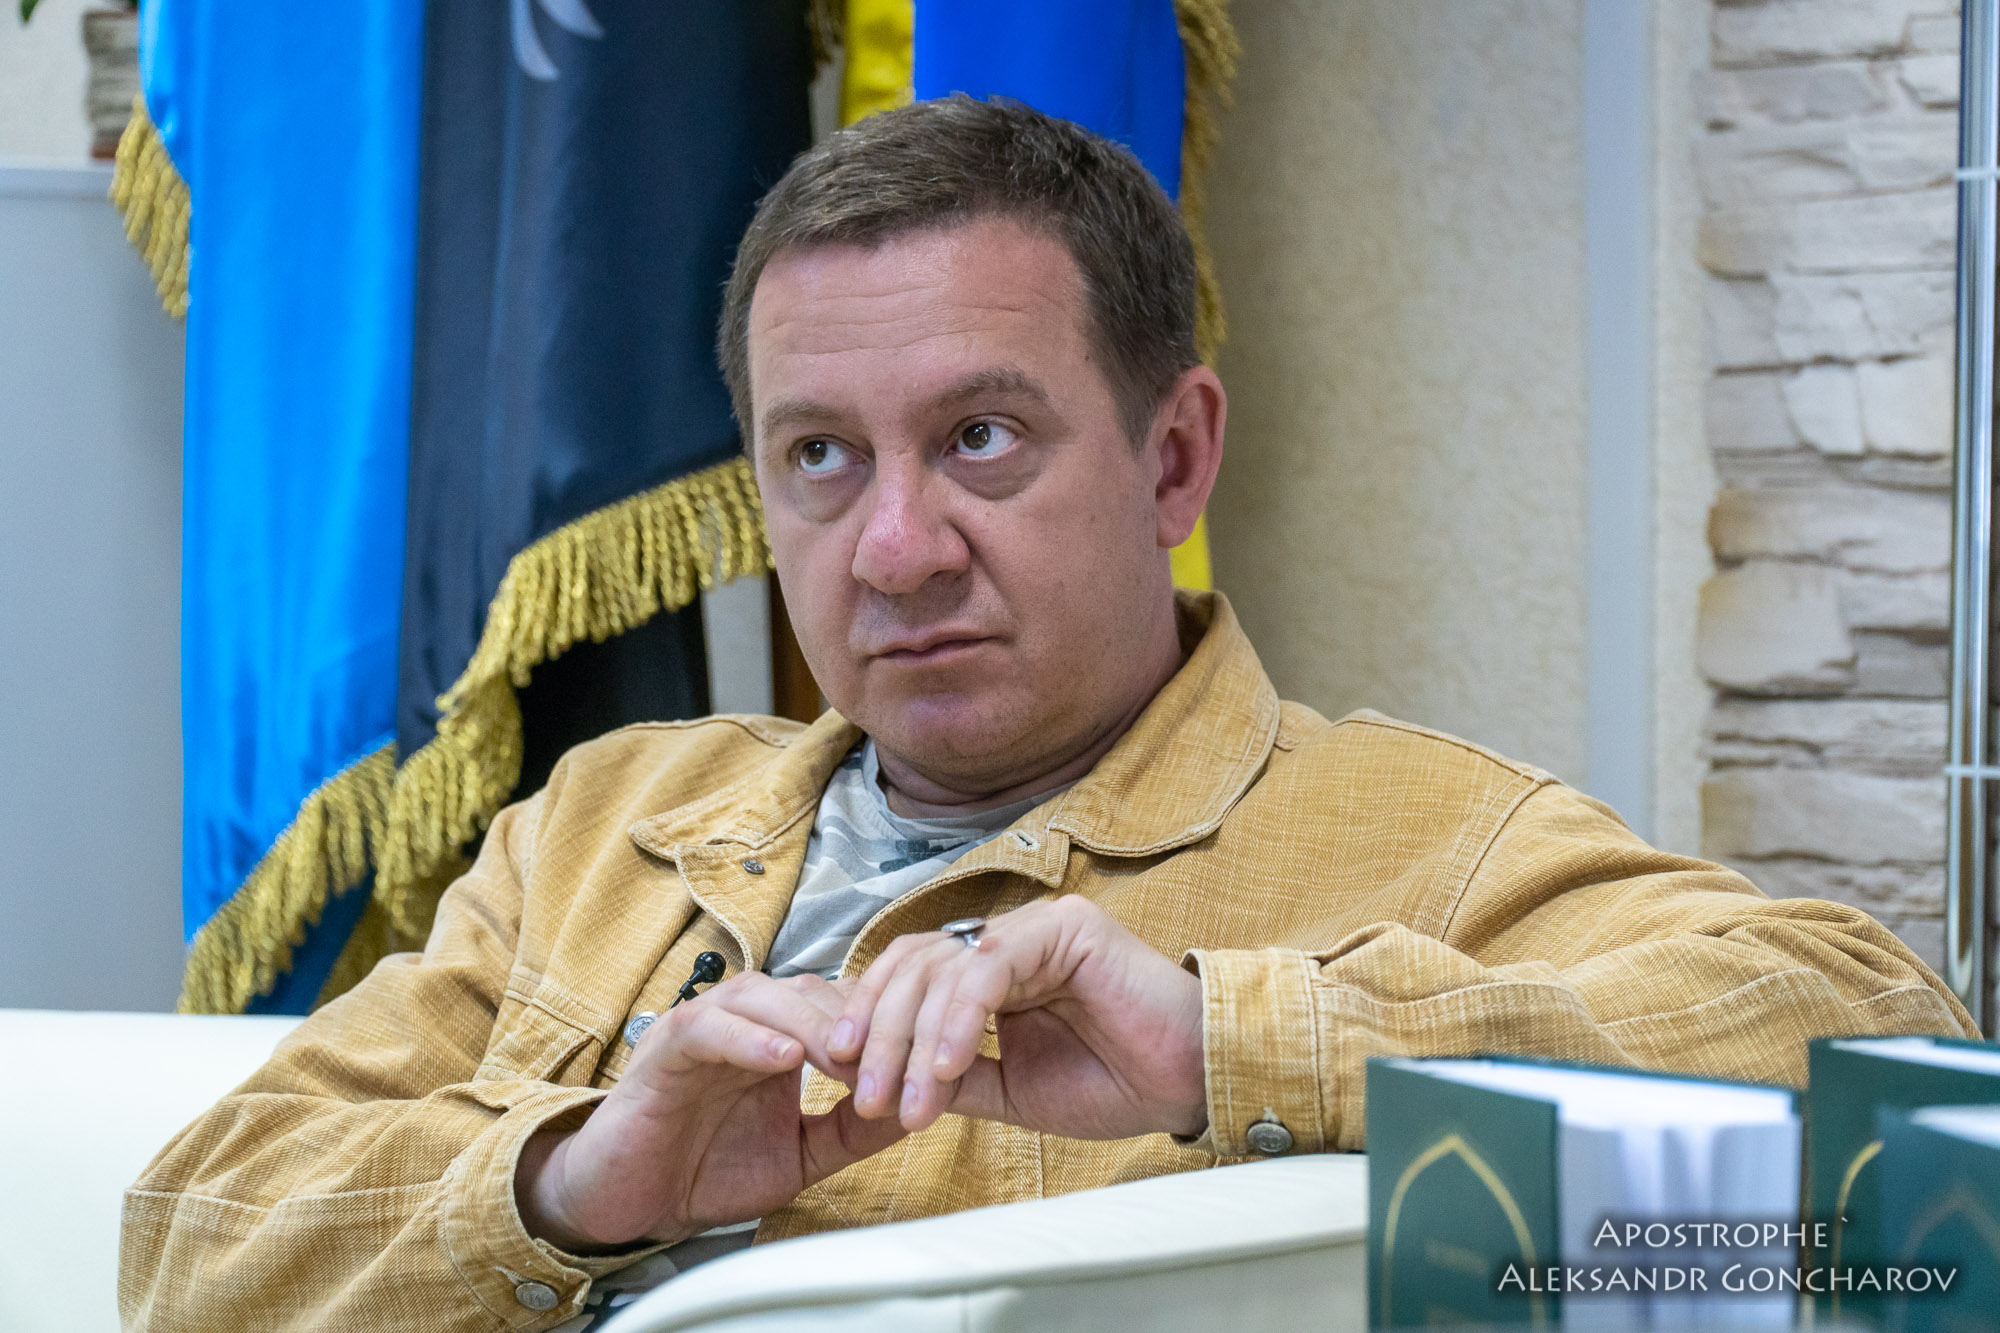 Полиция не нашла разжигания вражды в заявлениях Муждабаева